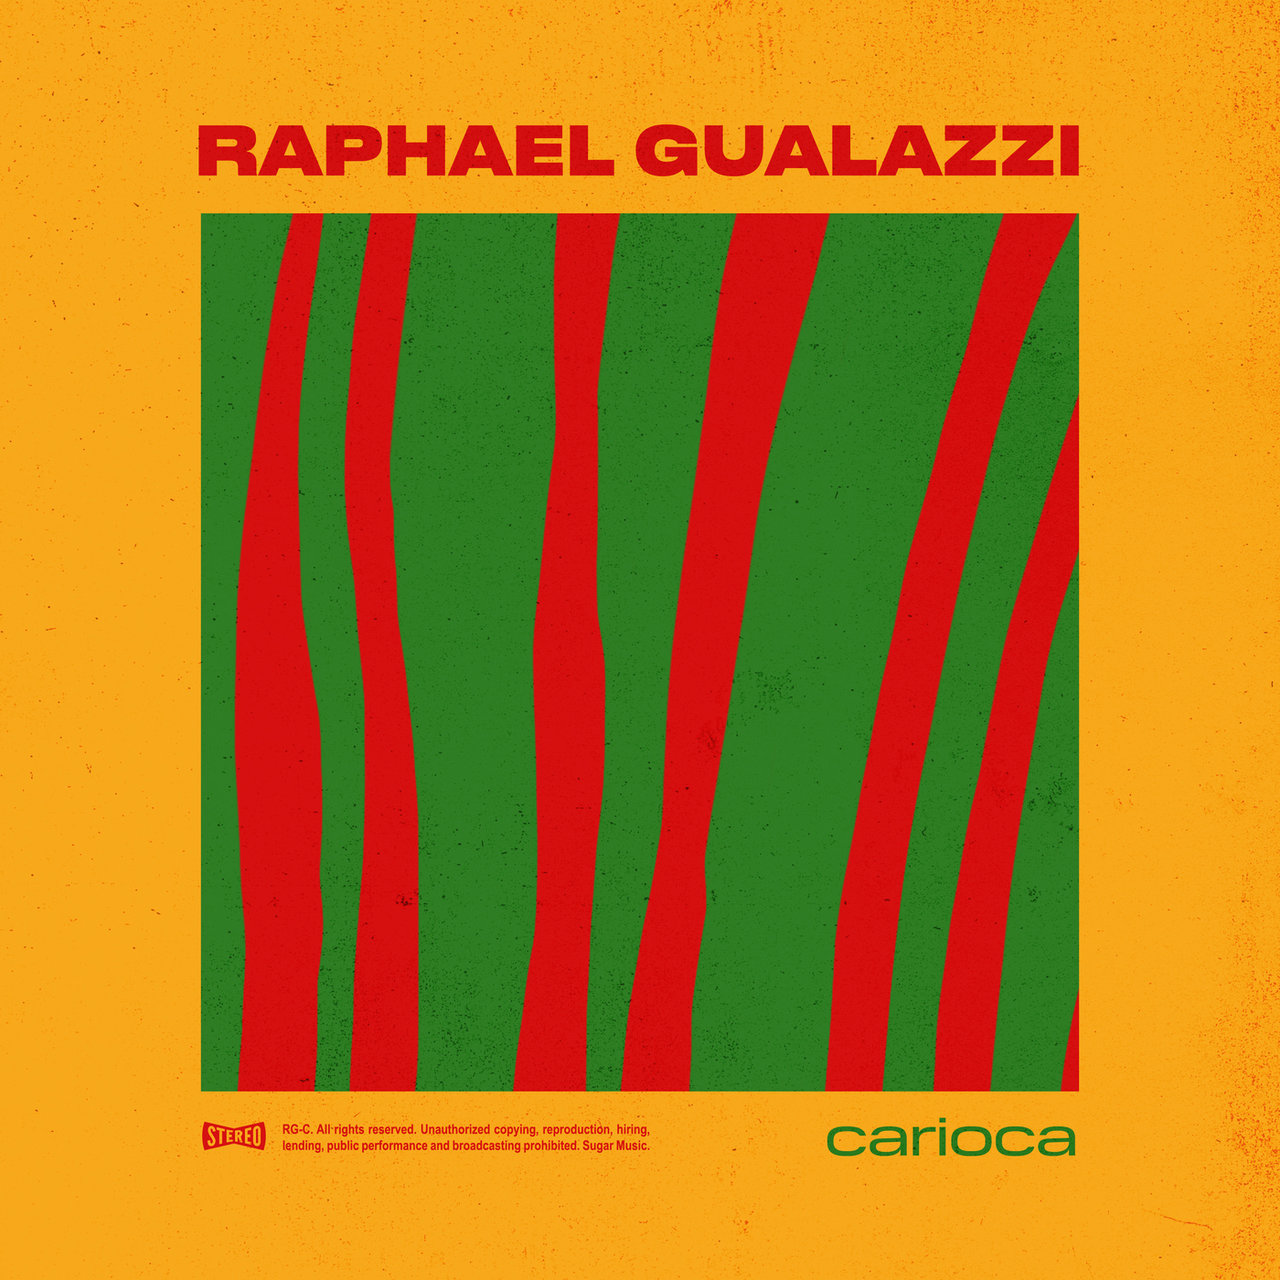 Raphael Gualazzi — Carioca cover artwork